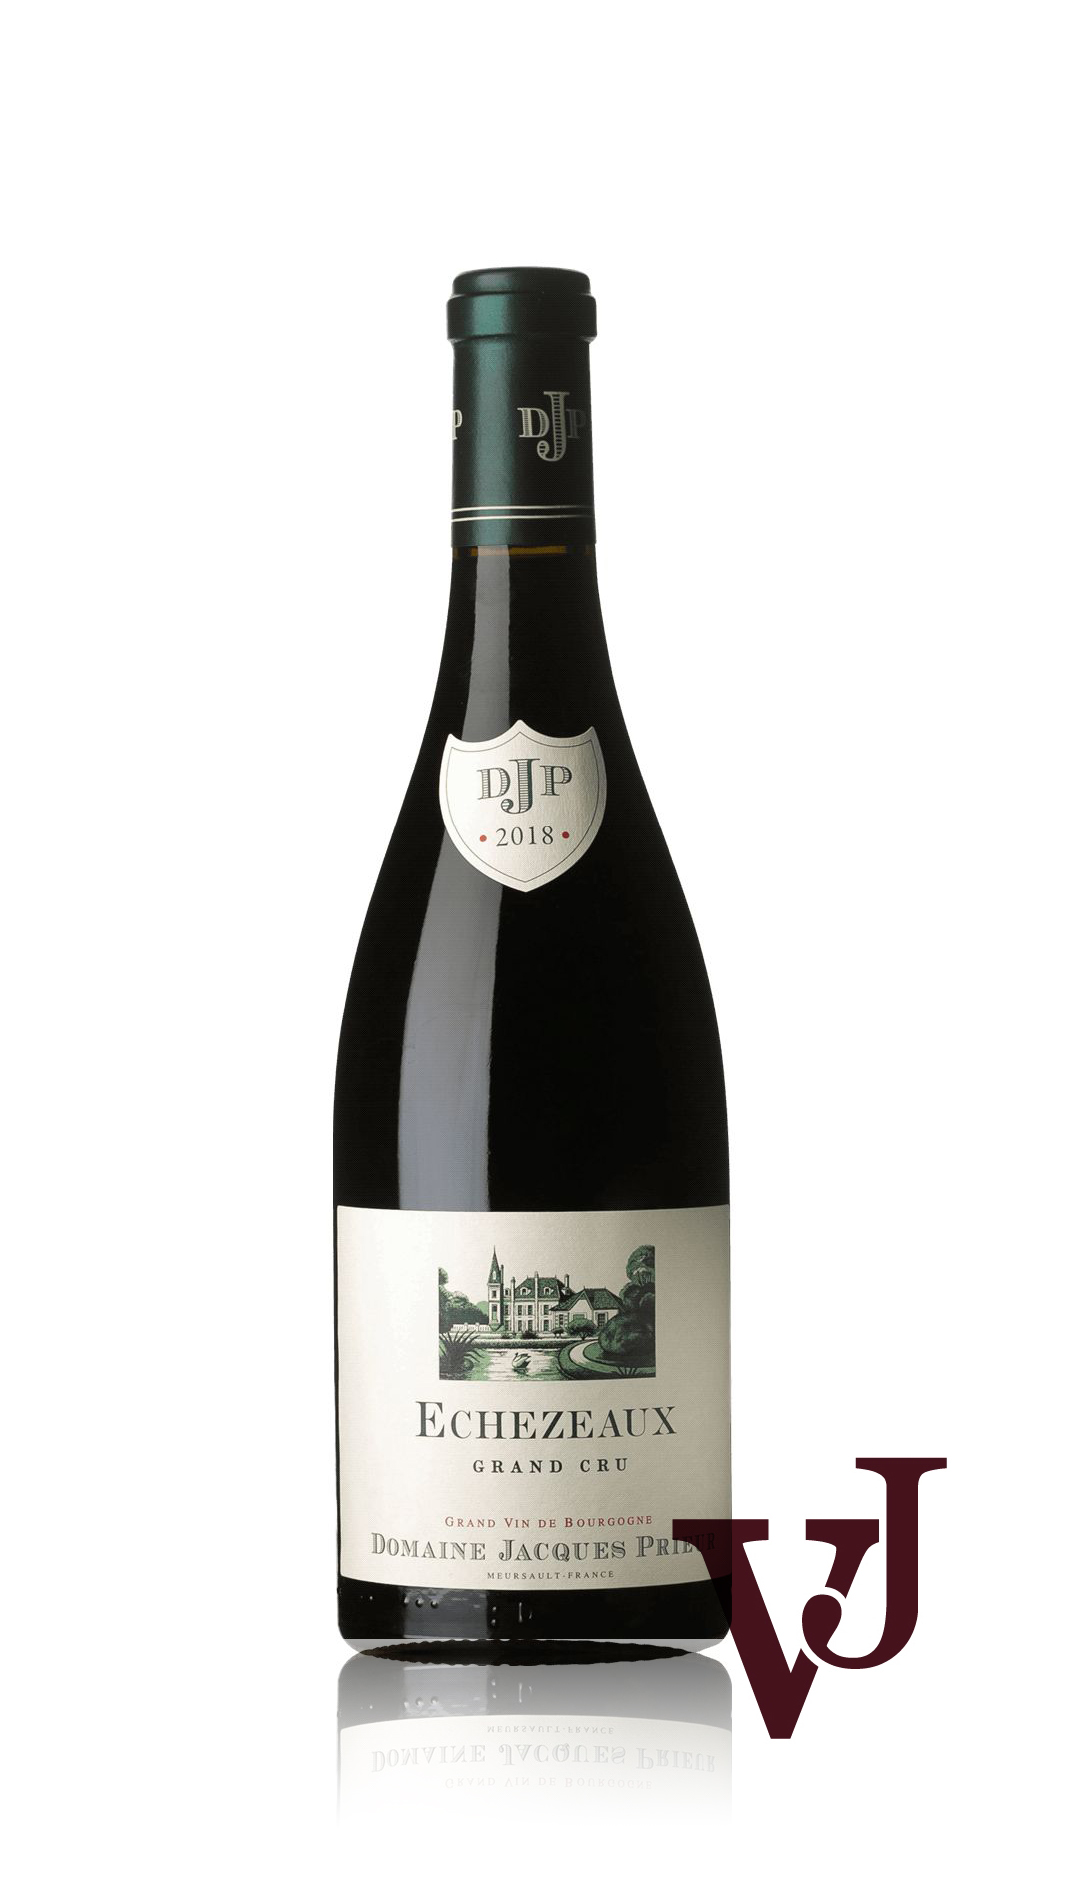 Rött Vin - Echezeaux Grand cru Domaine Jaques Prieur artikel nummer 9372501 från producenten Domaine Jacques Prieur från området Frankrike